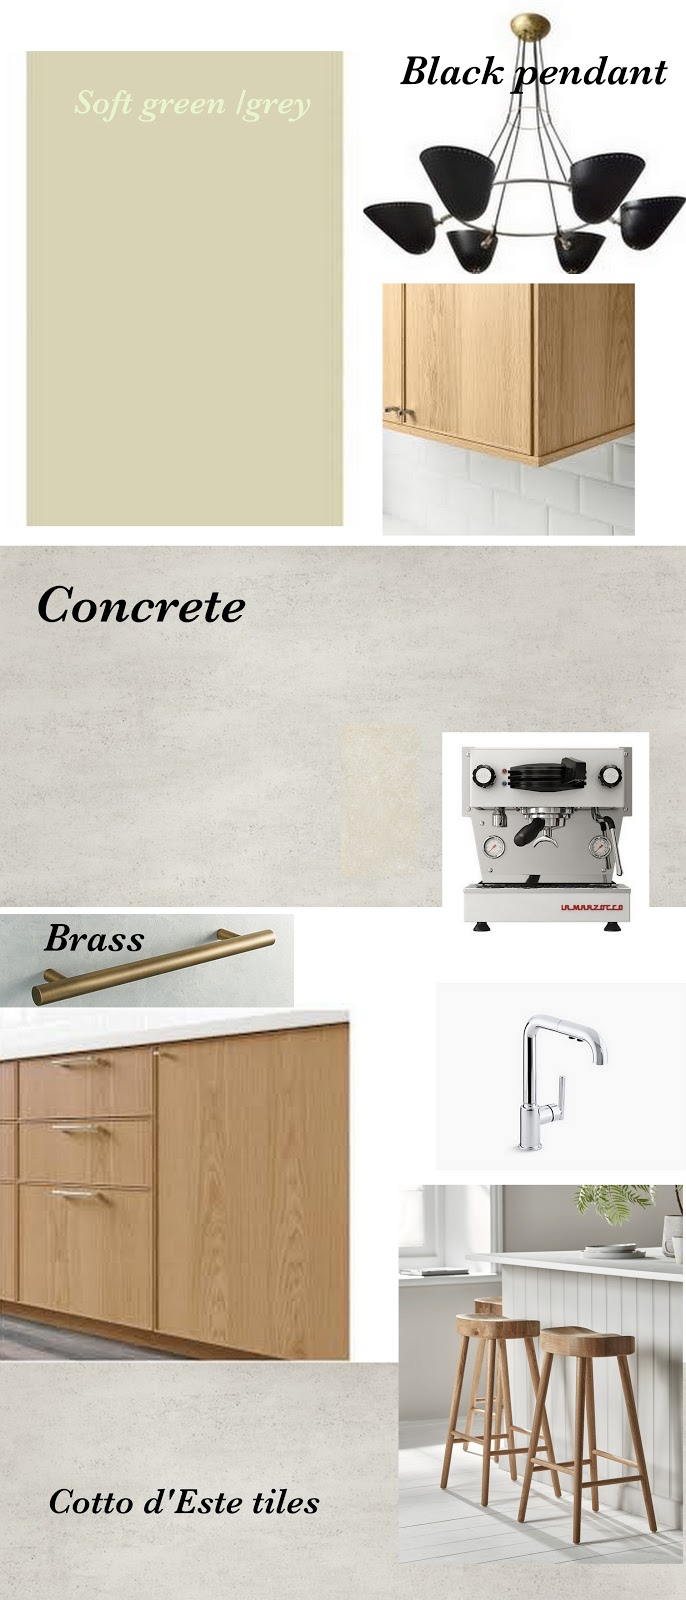 Wood Kitchen Cabinets Ikea, Ikea hack, design Ikea kitchen, Wood and concrete Kitchen